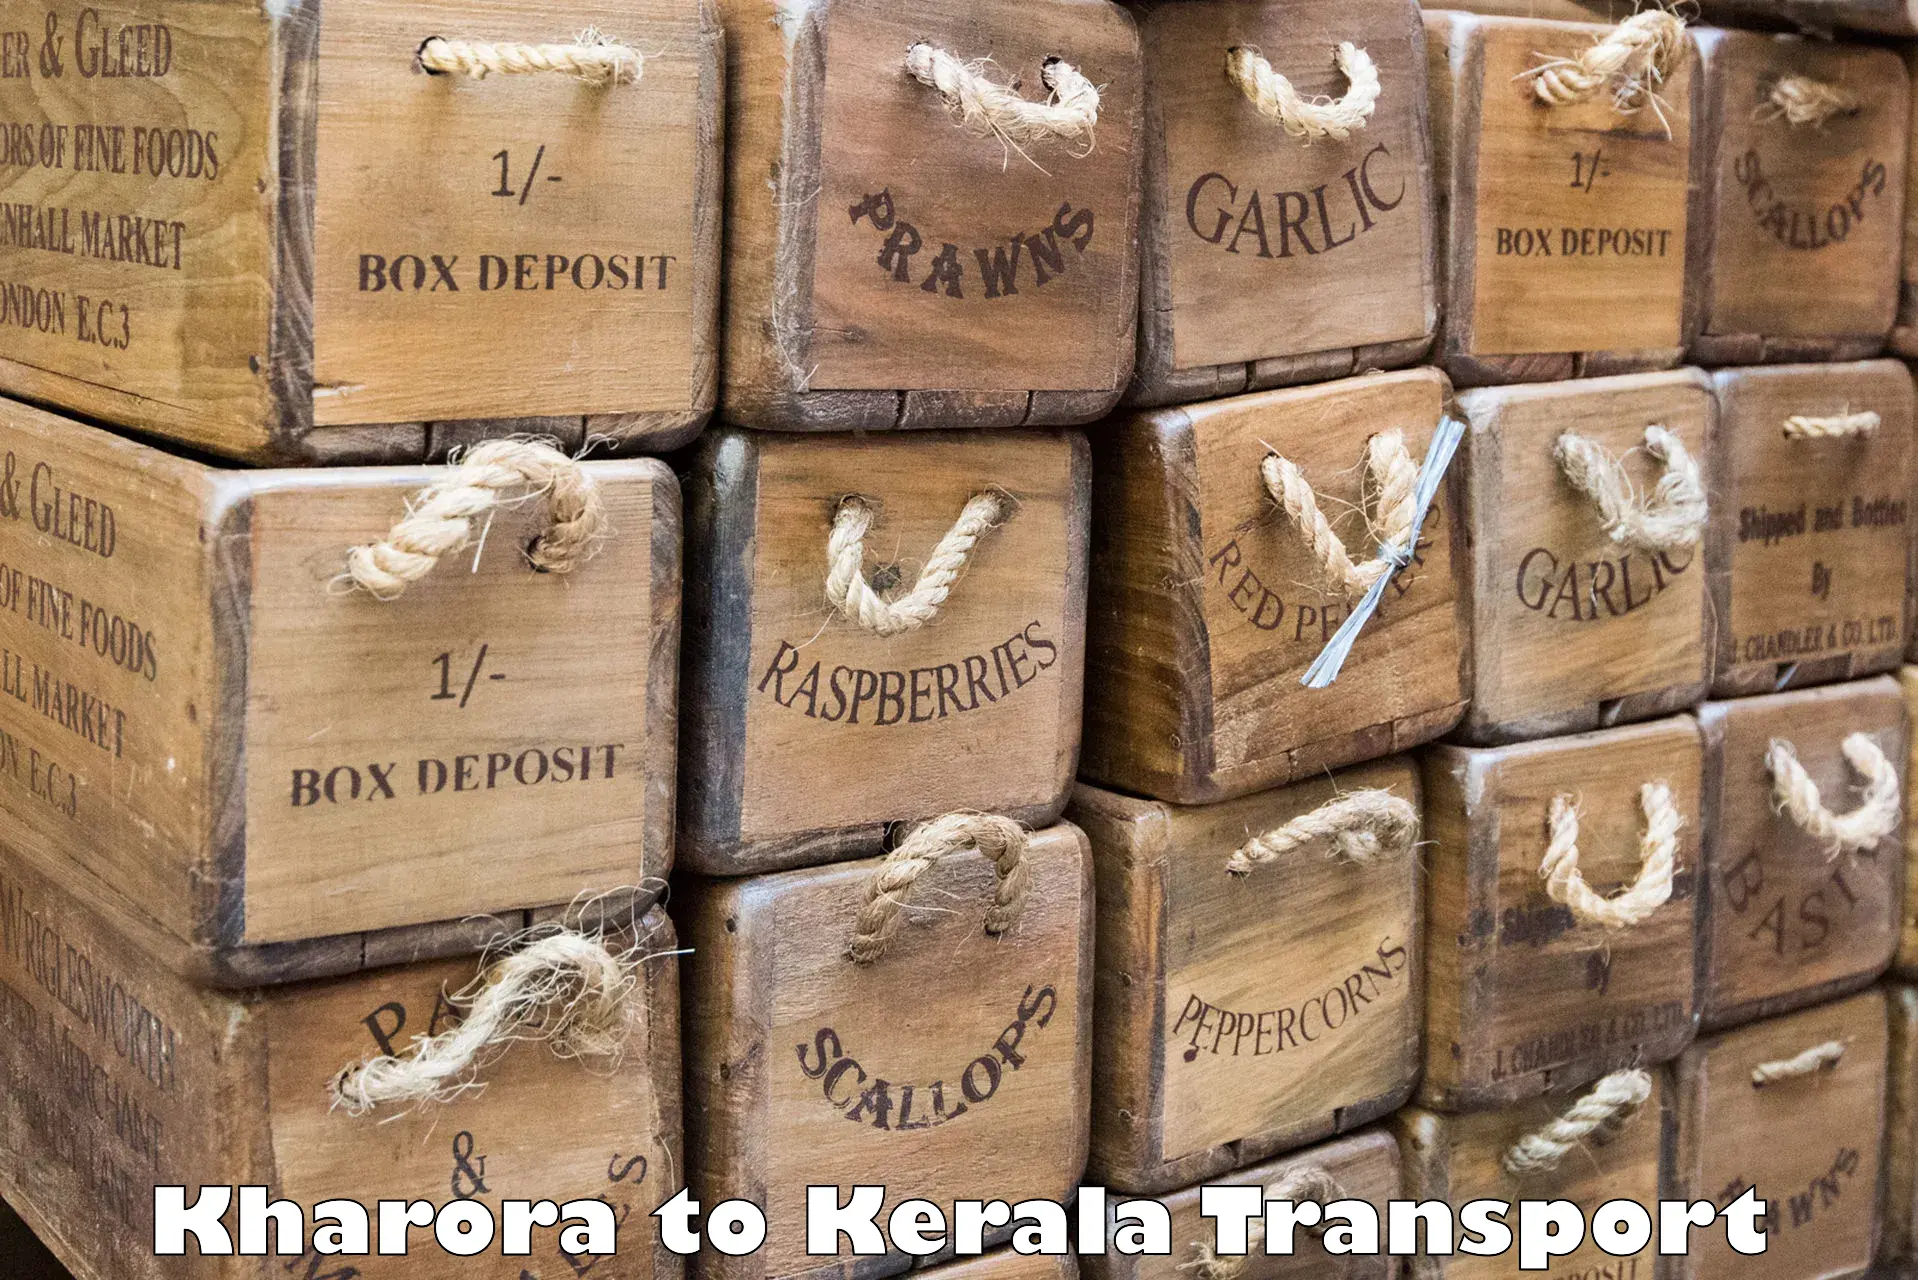 Truck transport companies in India in Kharora to Muvattupuzha